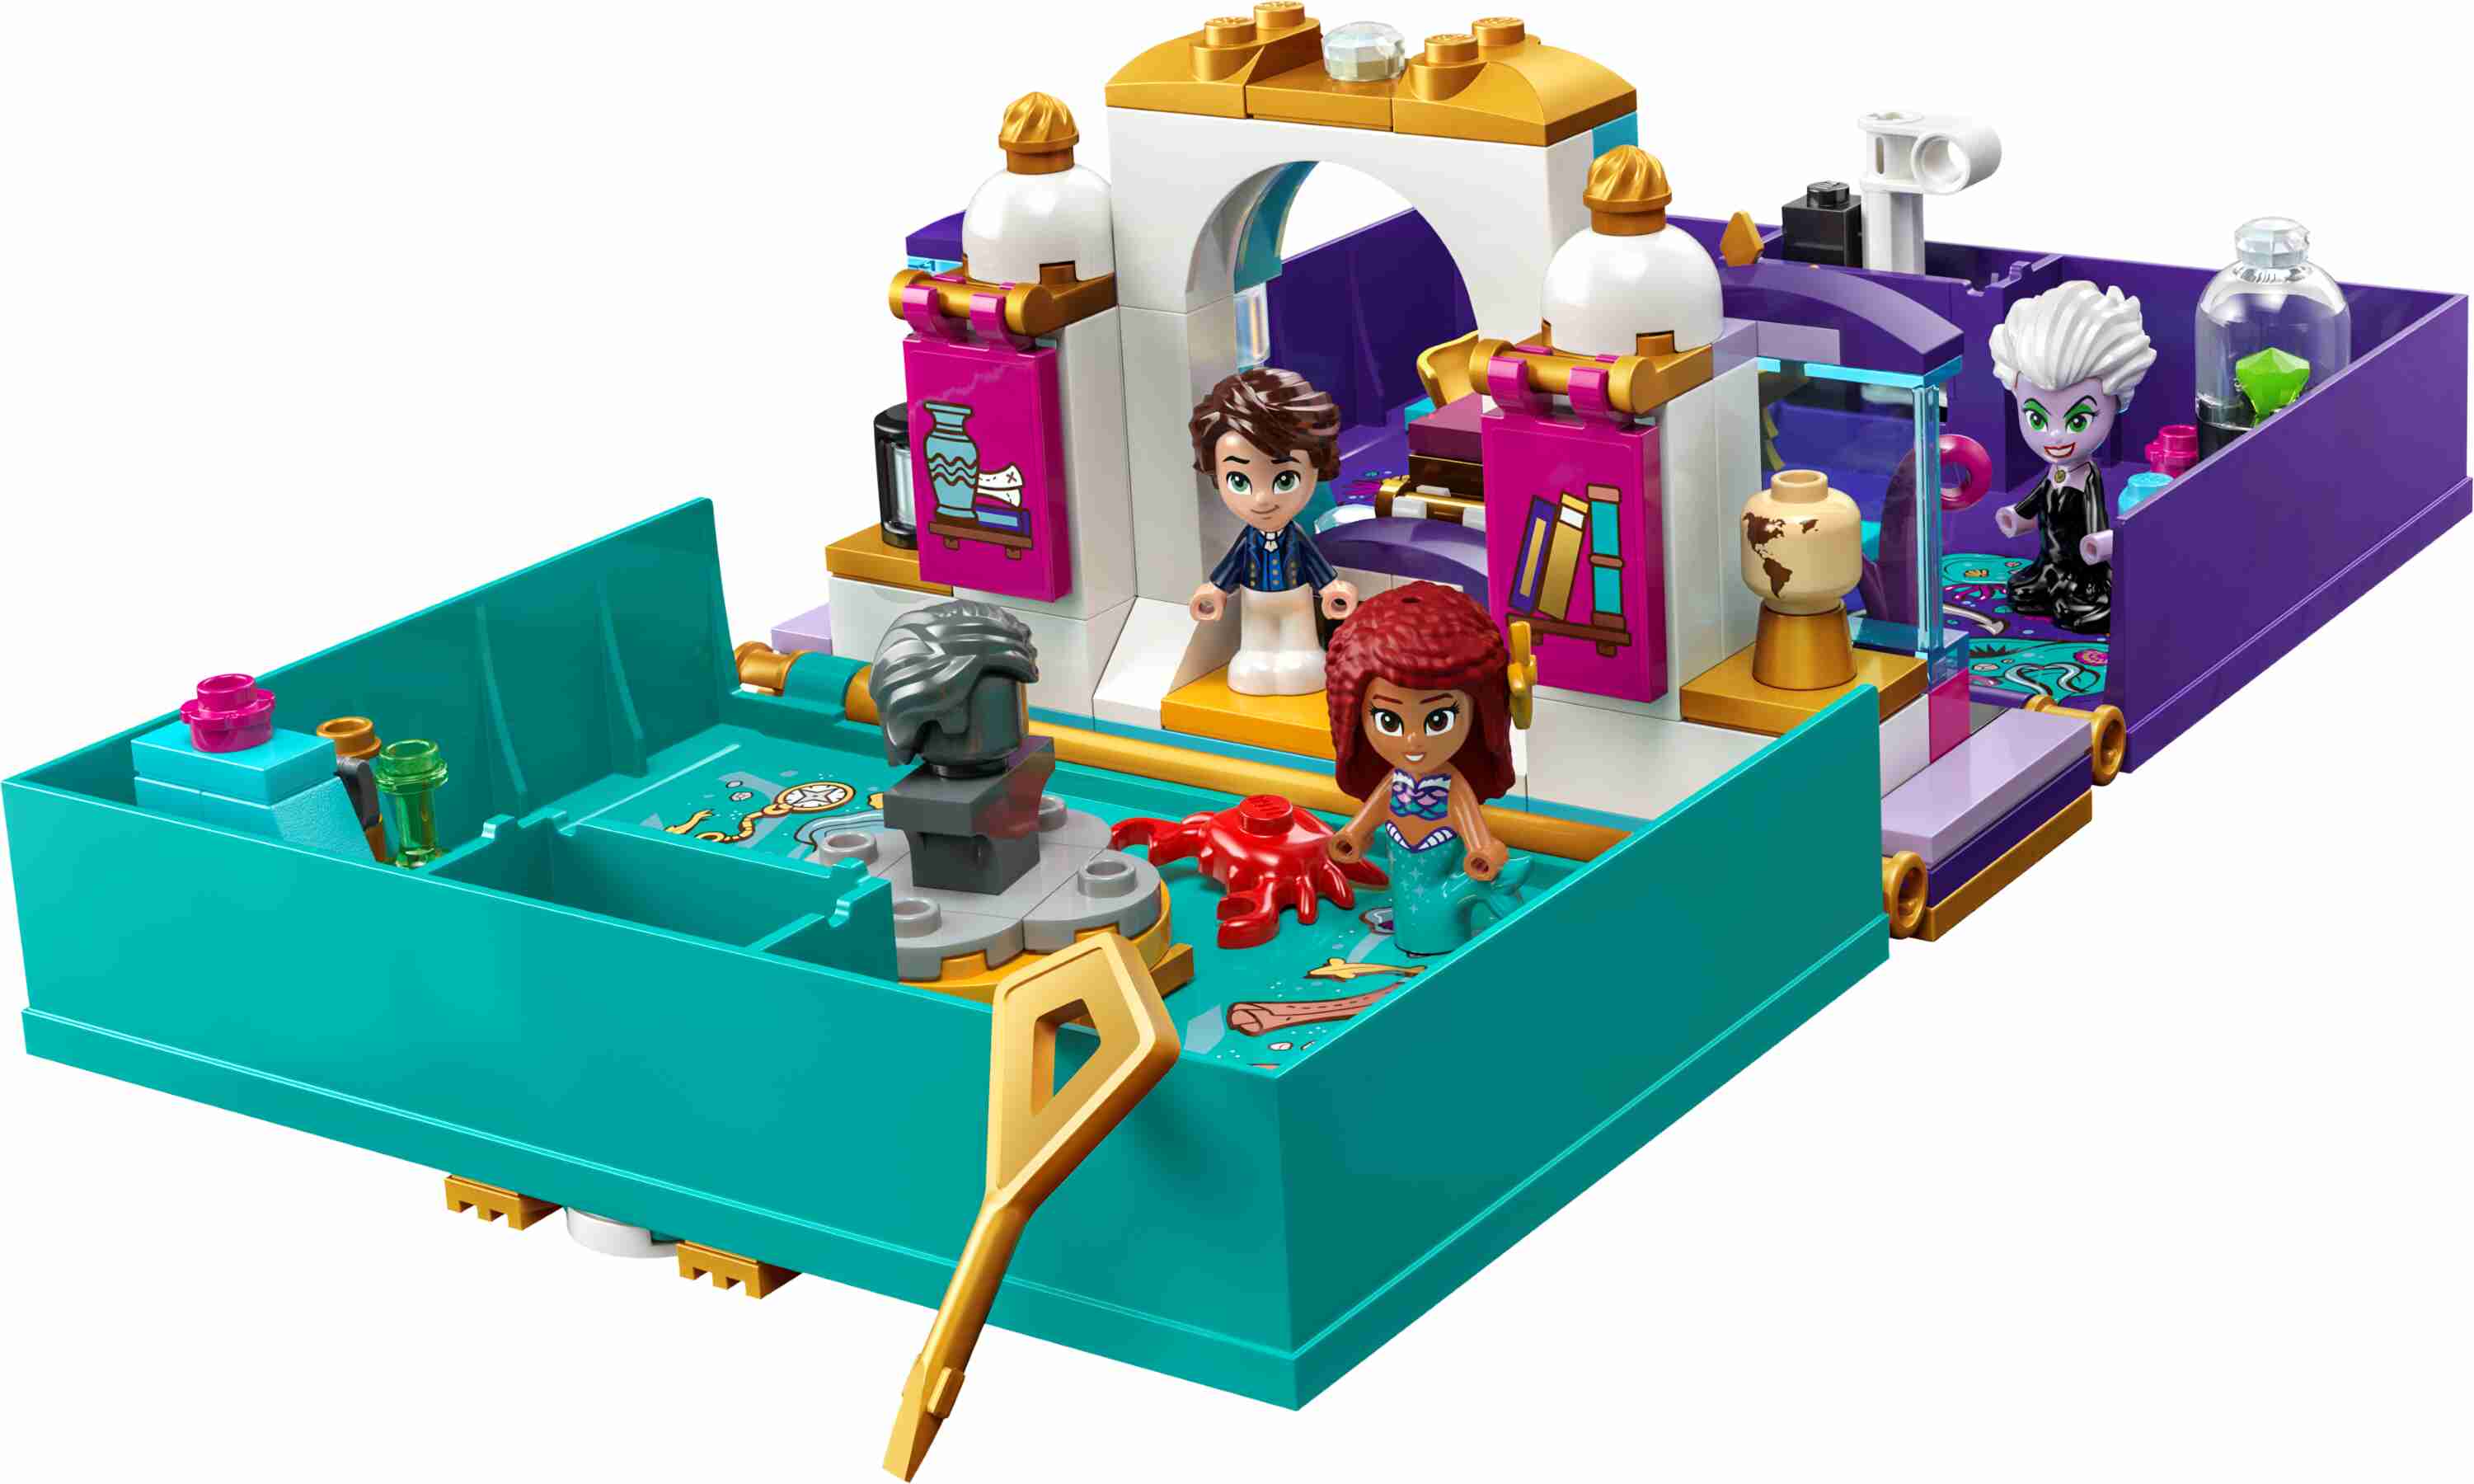 LEGO 43213 Disney Die kleine Meerjungfrau - Märchenbuch, 3 Mikro-Spielfiguren